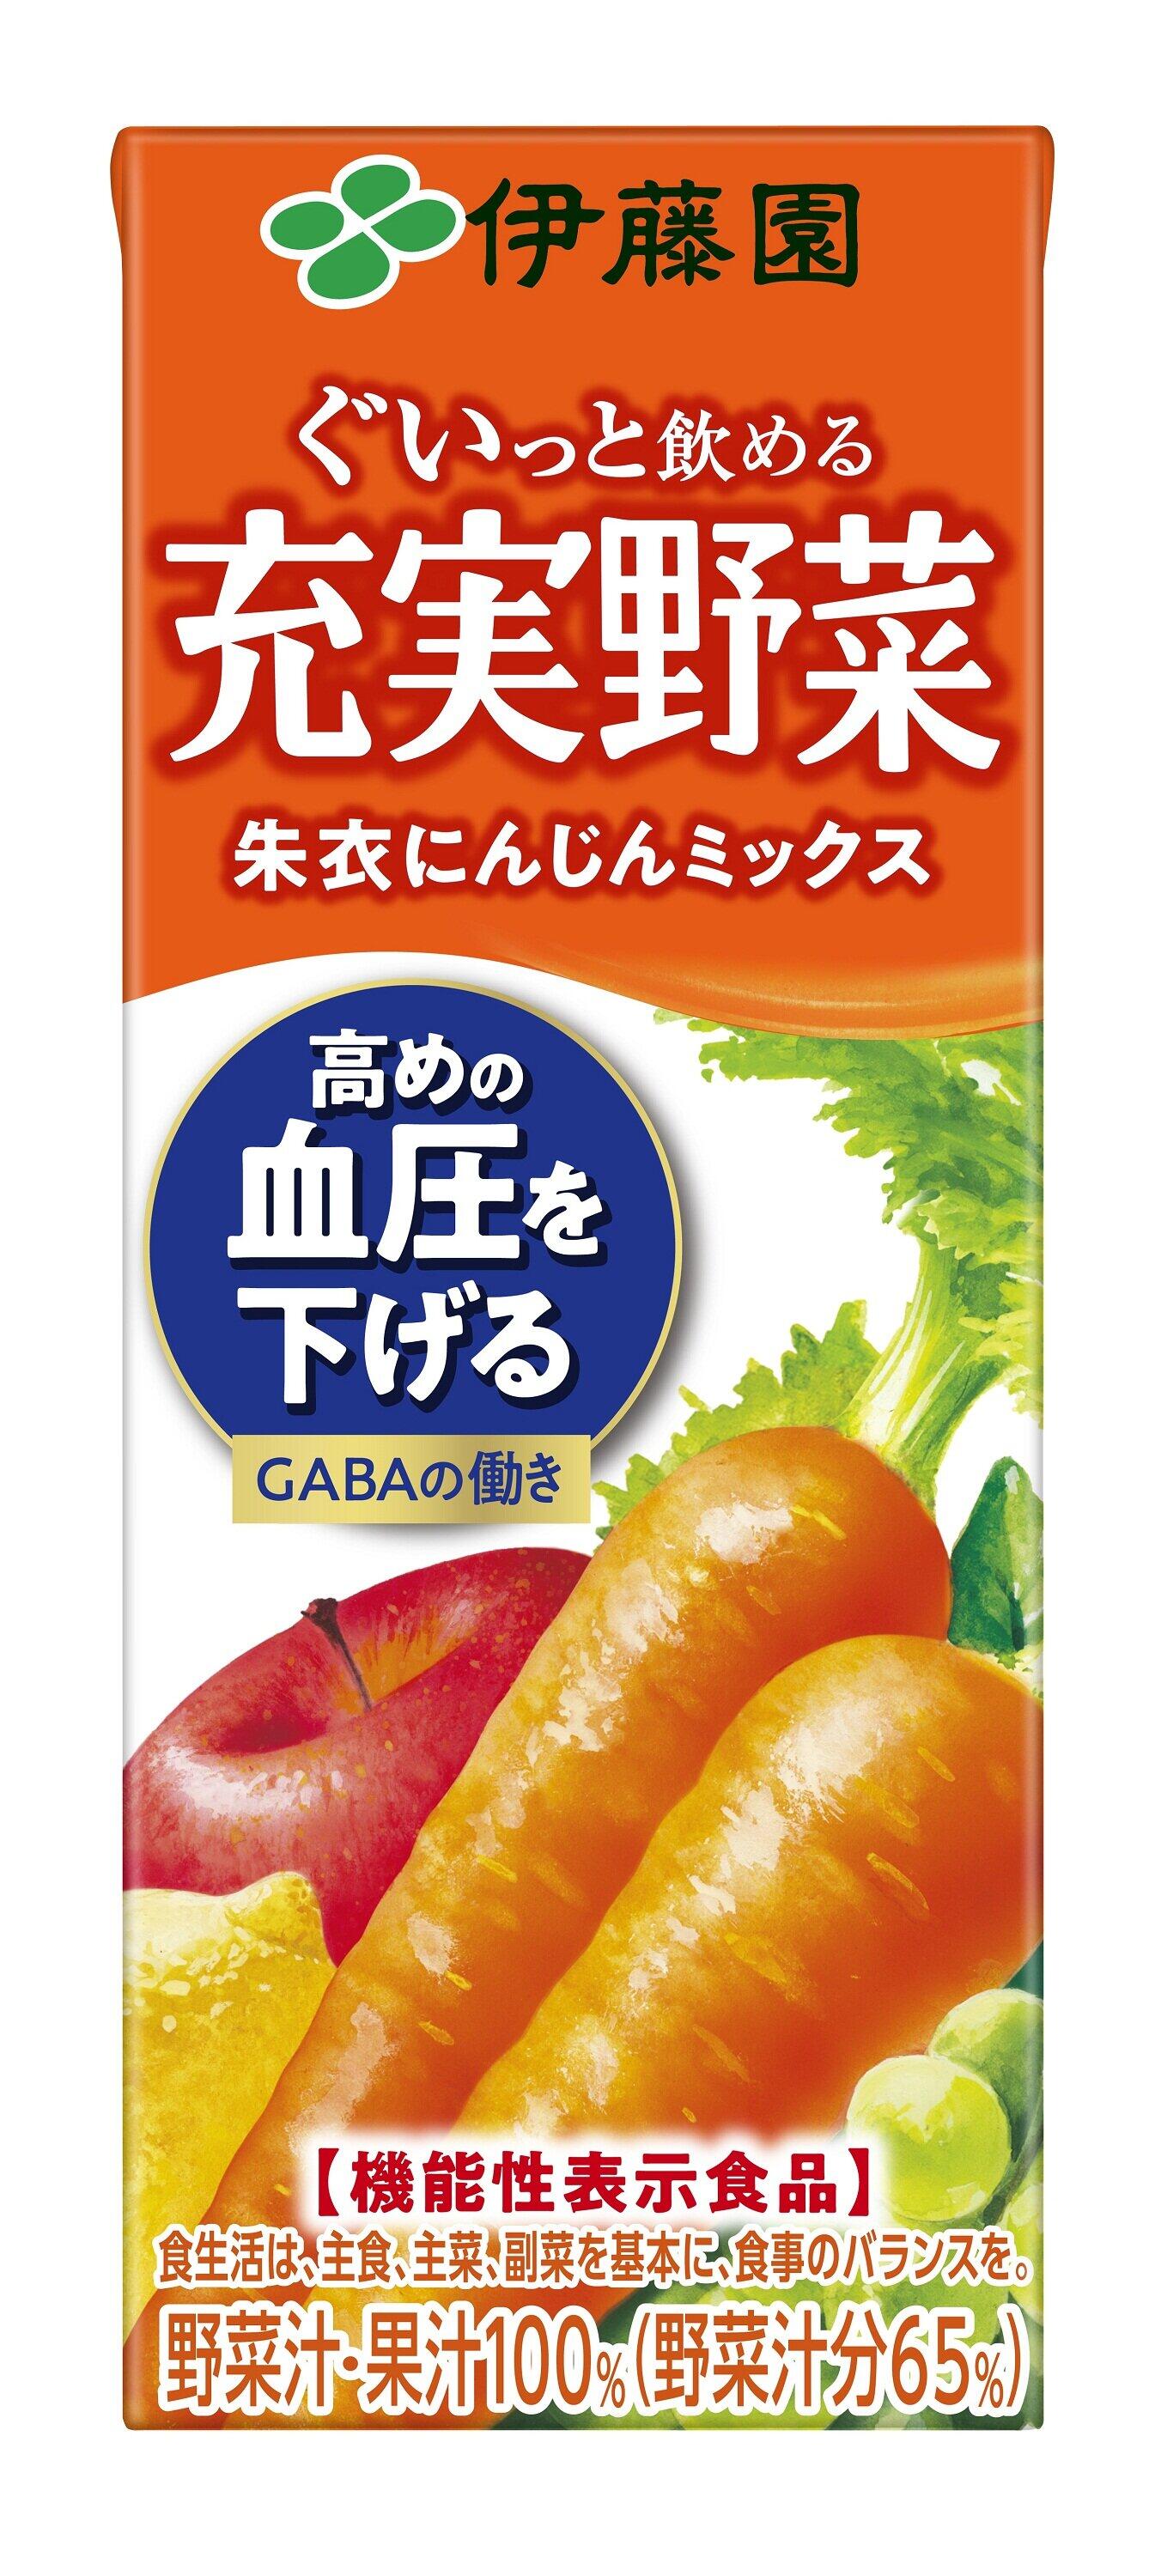 GABAを摂取できる　機能性表示食品の野菜・果汁ミックス飲料